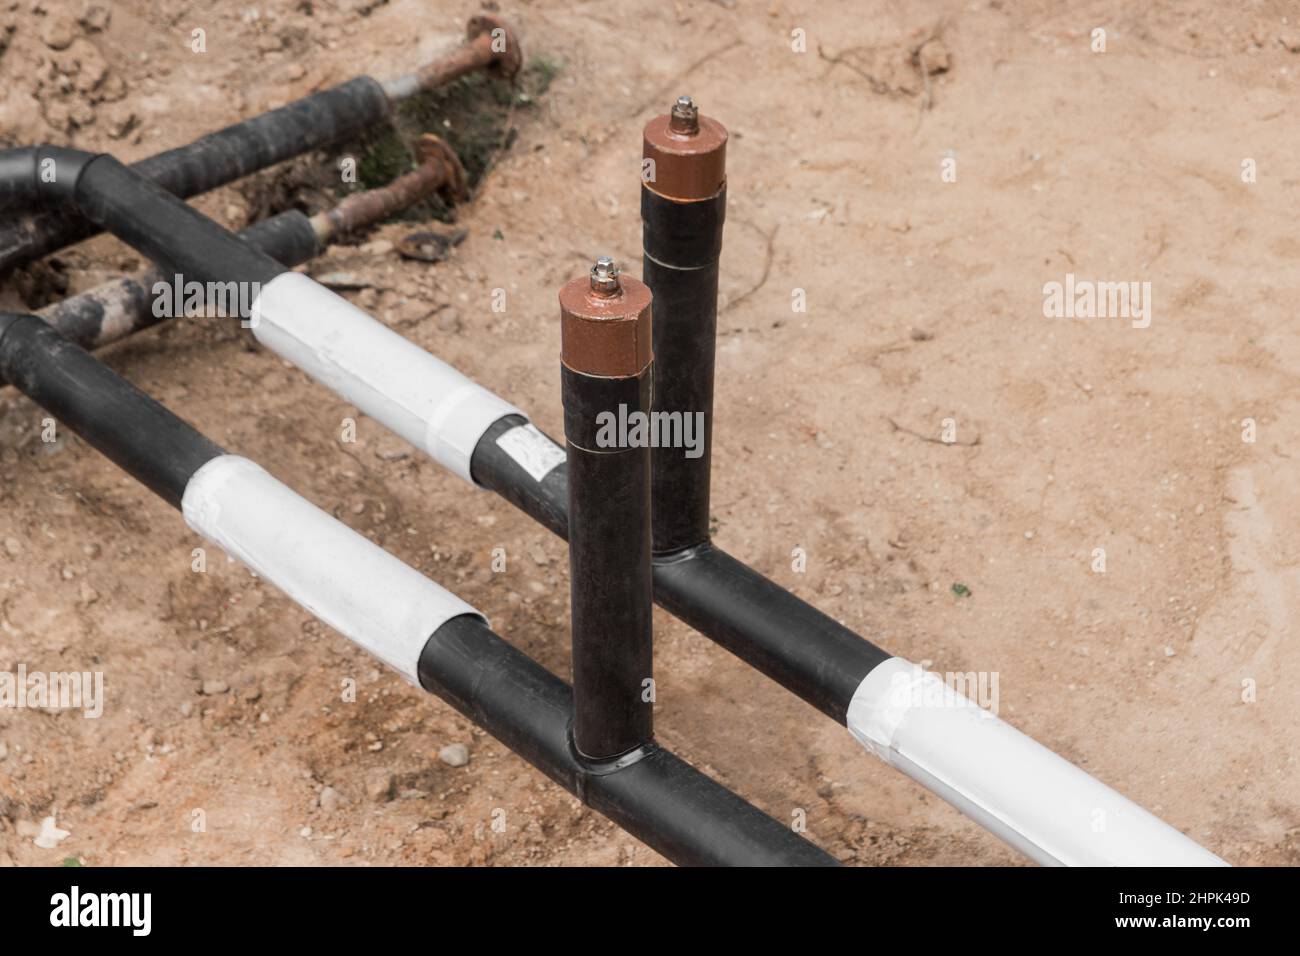 Reparación de la línea de agua de la tubería principal de calefacción en la tubería de la zanja de tierra en la industria del trabajo en el lugar de construcción. Foto de stock